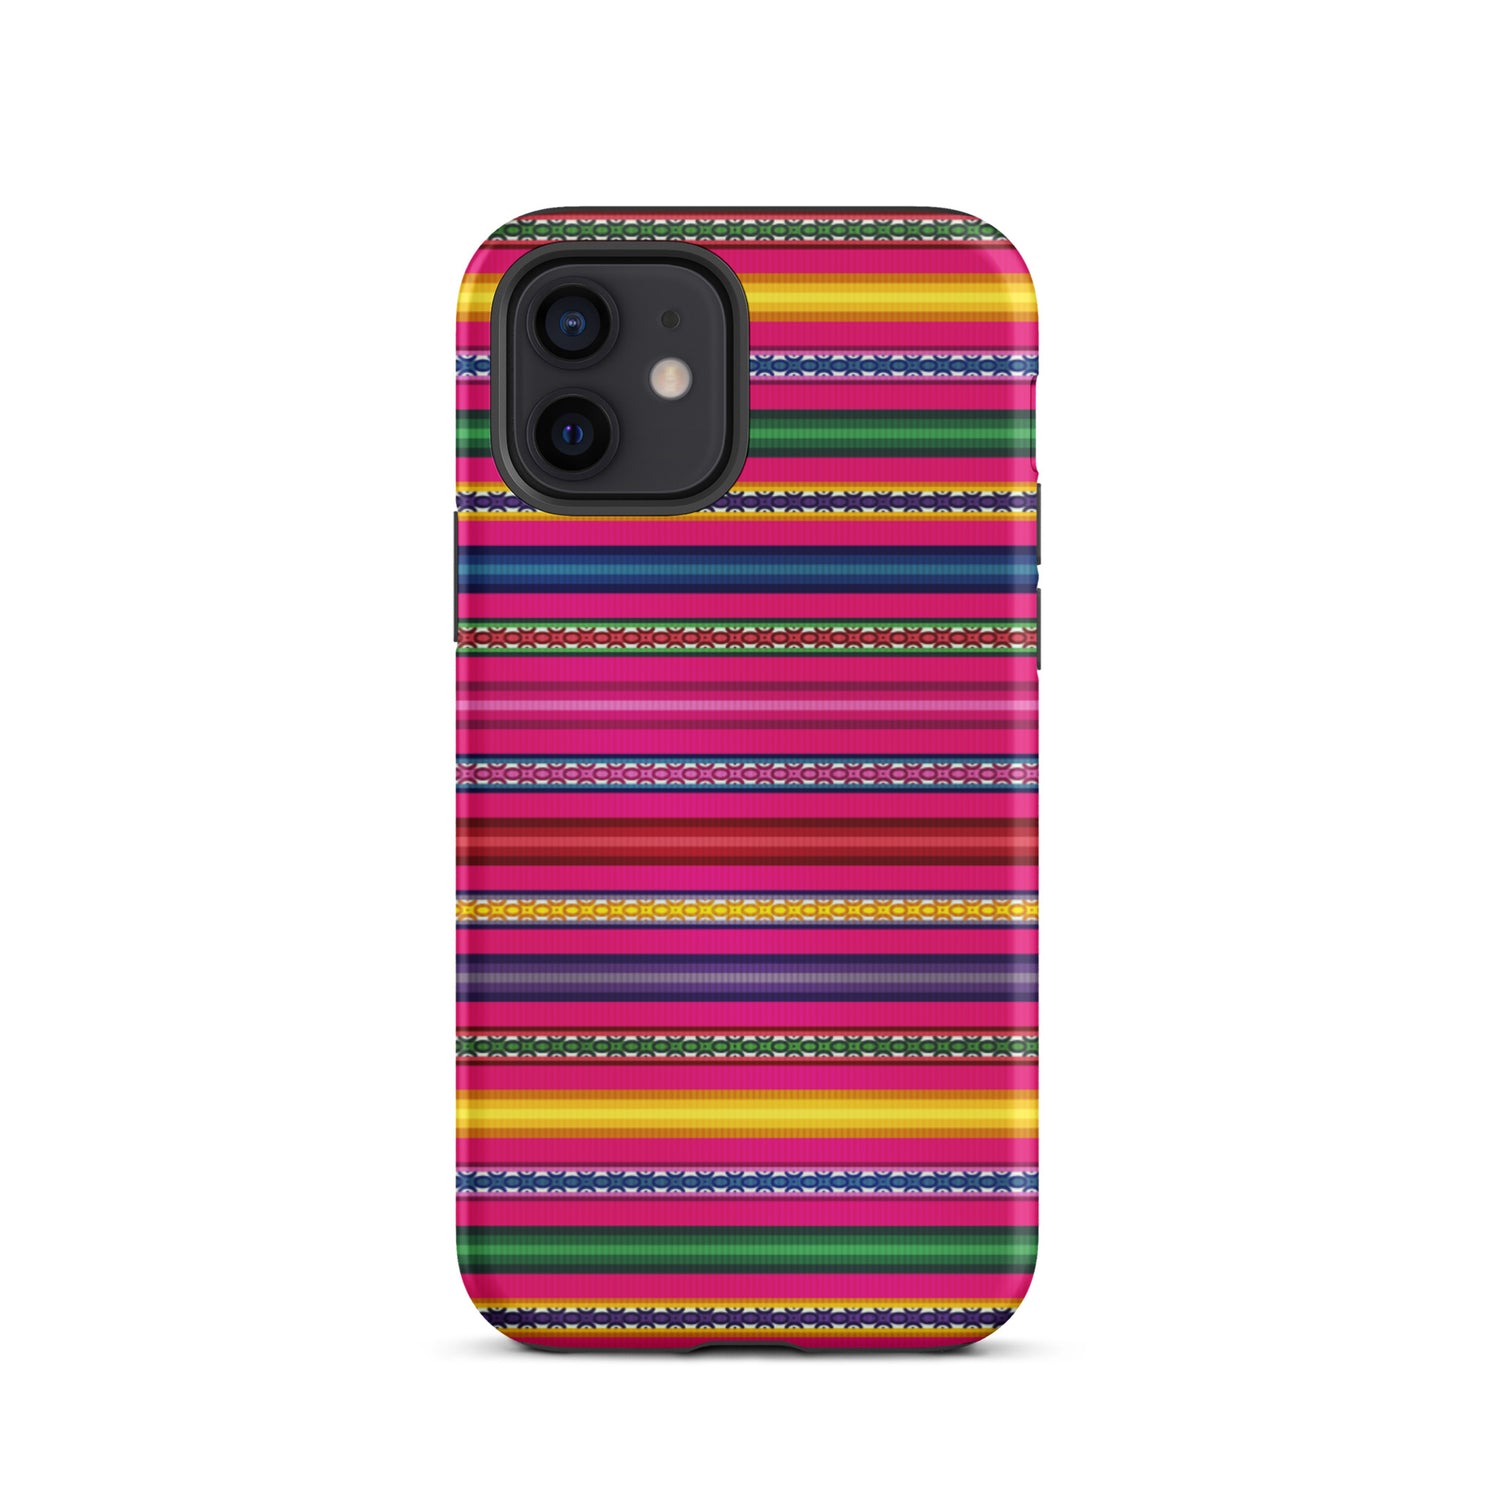 Peruvian Tough iPhone 12 case